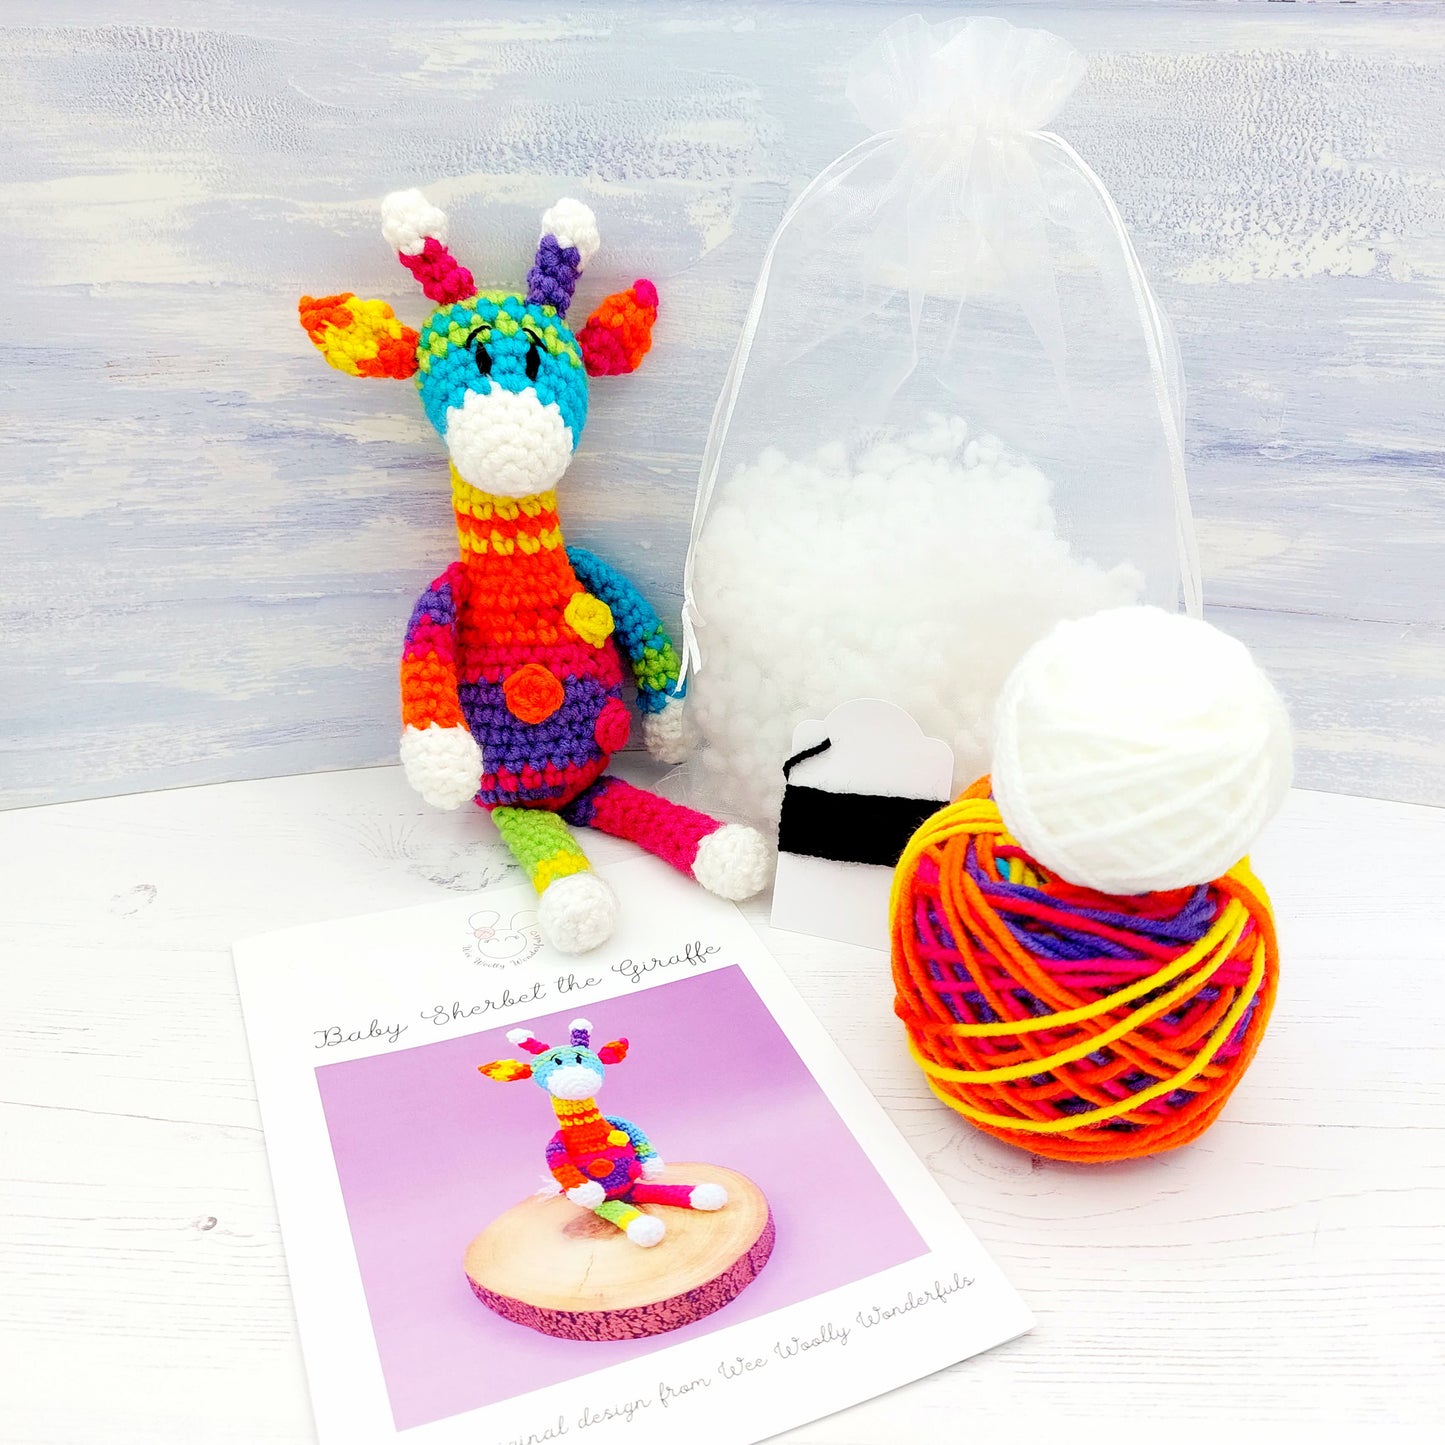 Baby Sherbet the Giraffe Mini Crochet Kit